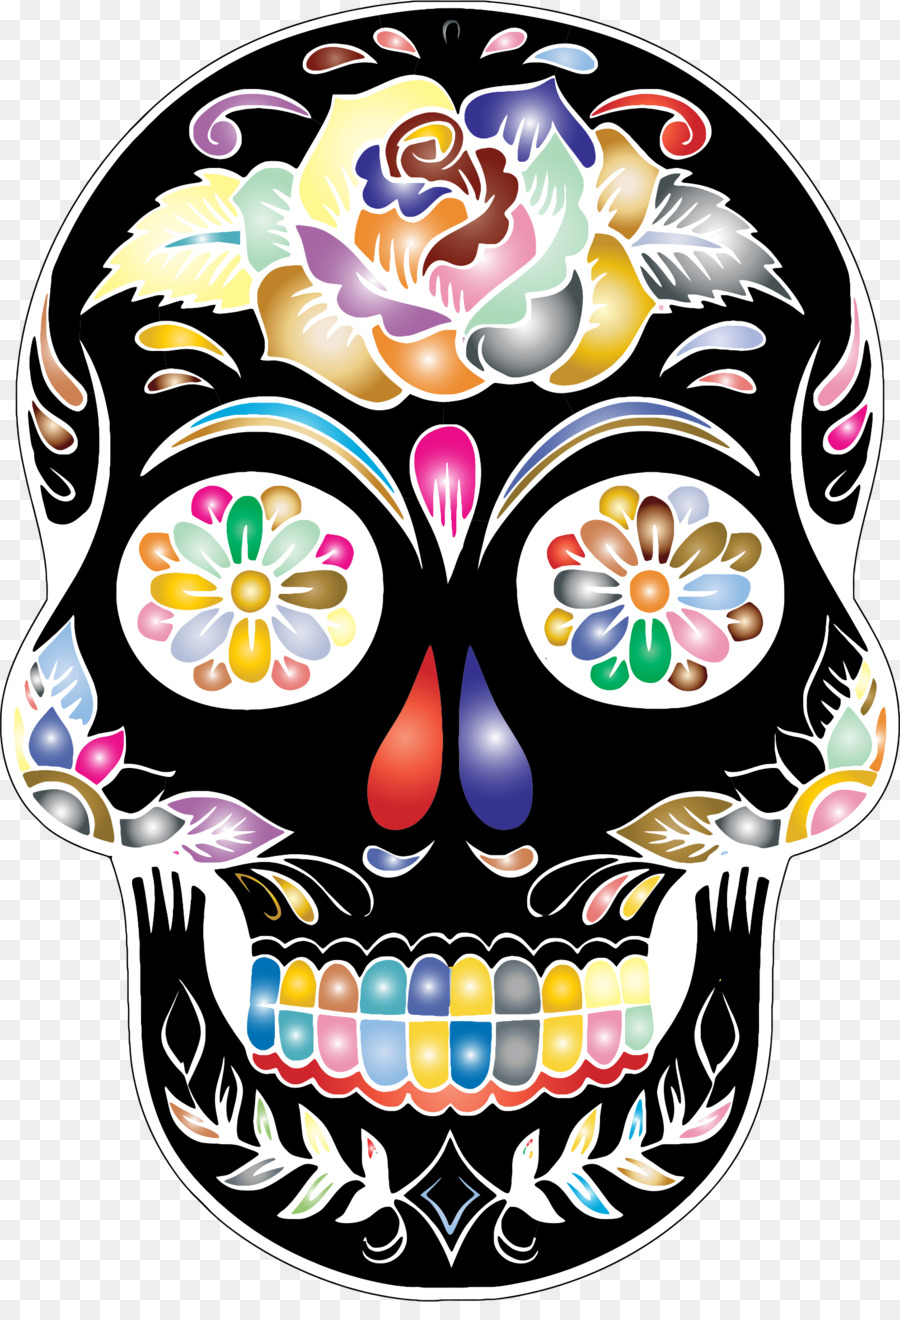 Calavera Skull Day of the Dead Clip art - skulls png download - 1608*2326 - Free Transparent Calavera png Download.